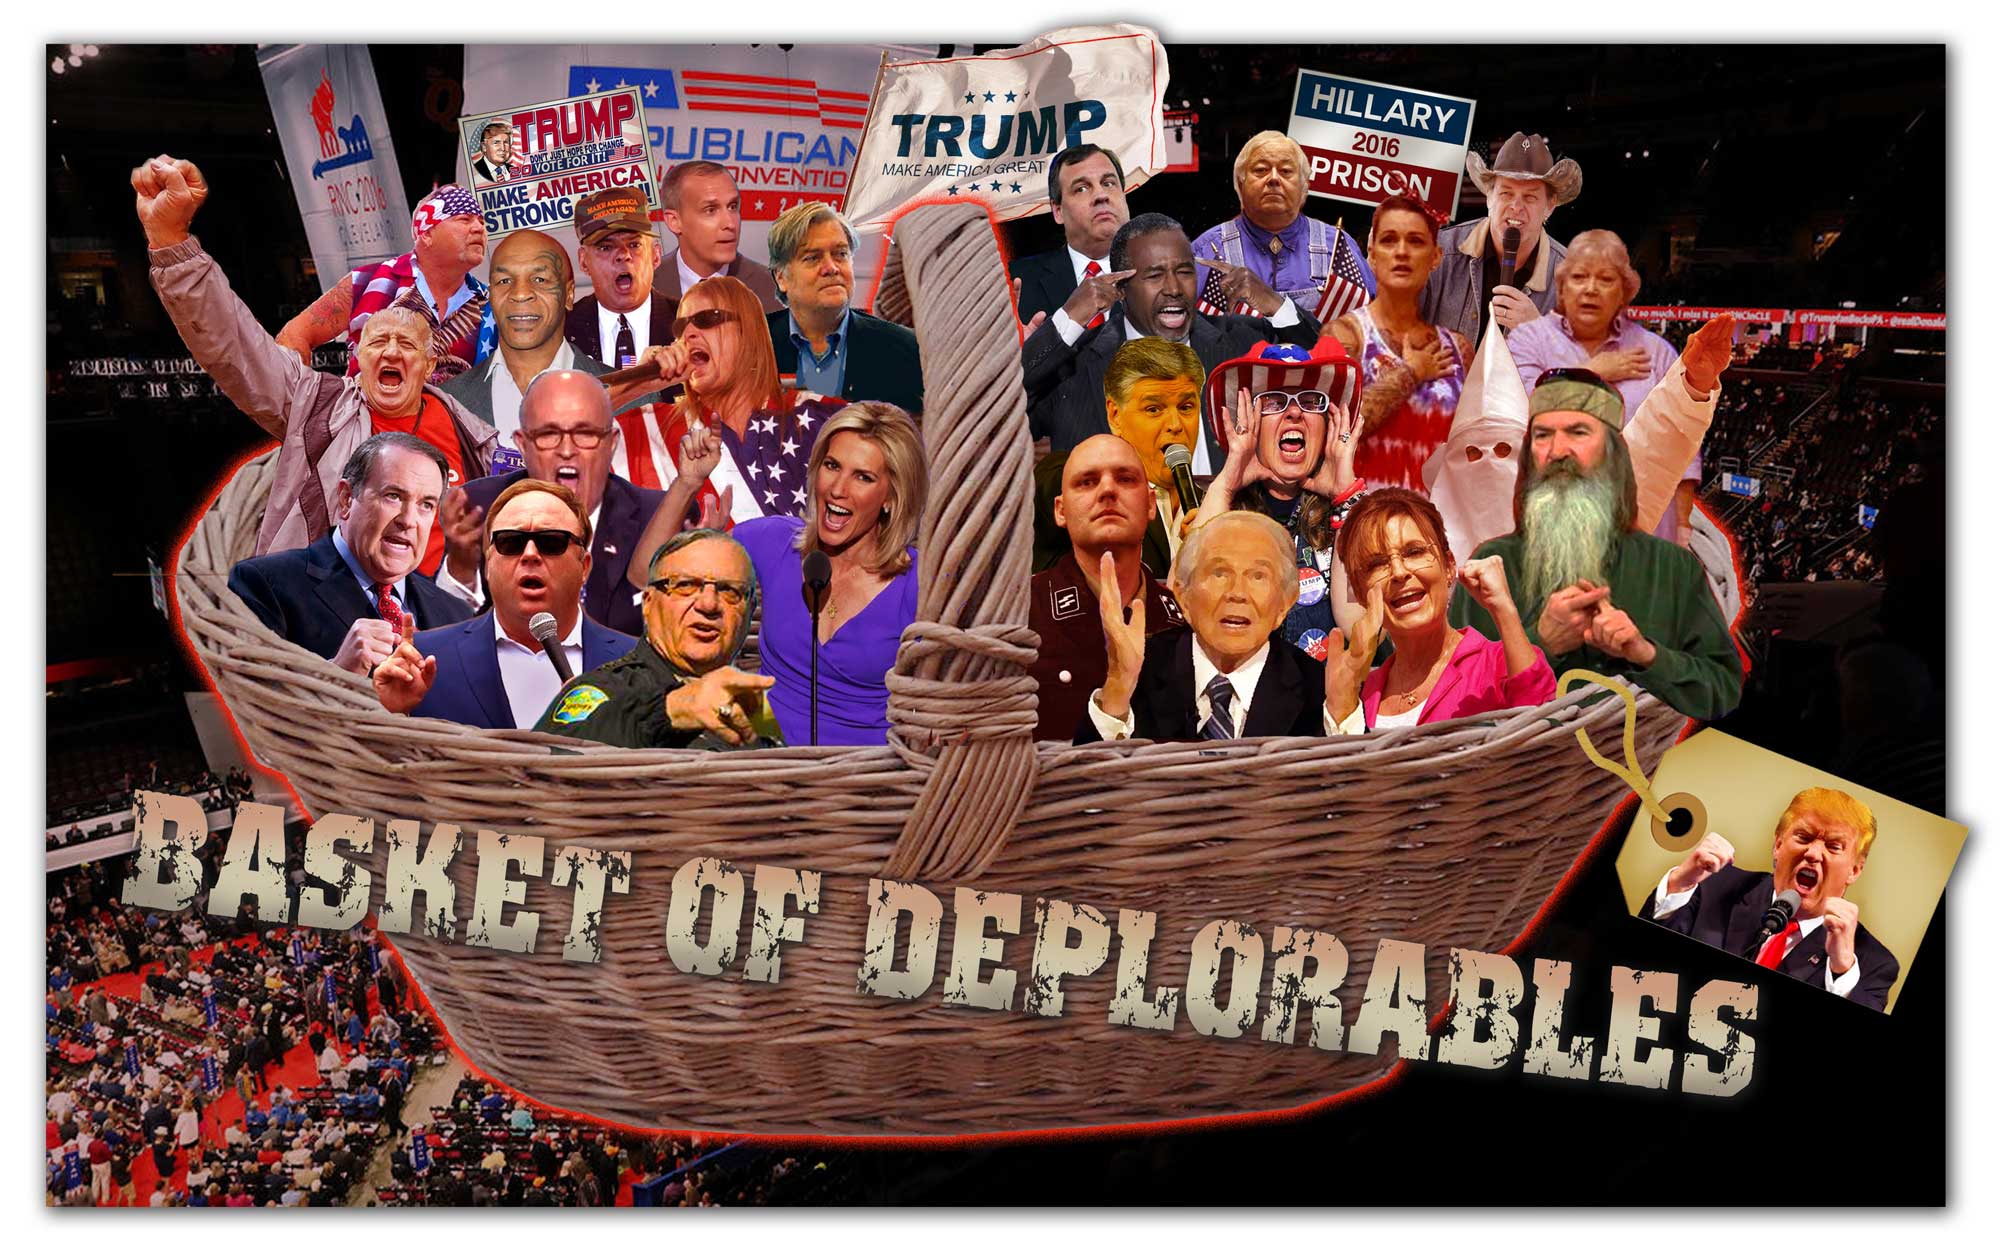 Basket Of Deplorables